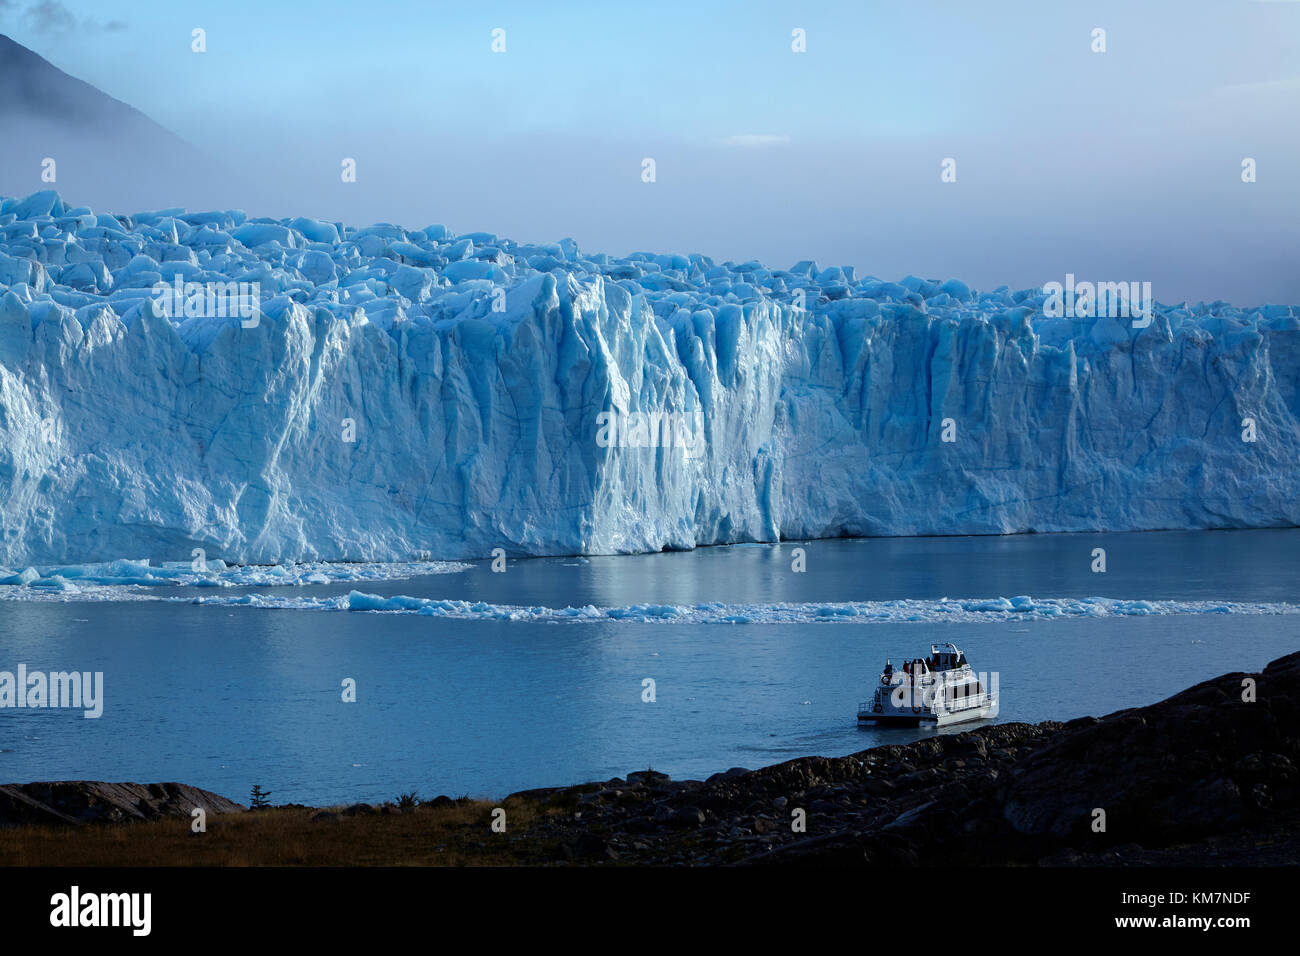 Bateau de tourisme et Perito Moreno, Parque Nacional Los Glaciares (zone du patrimoine mondial), Patagonie, Argentine, Amérique du Sud Banque D'Images